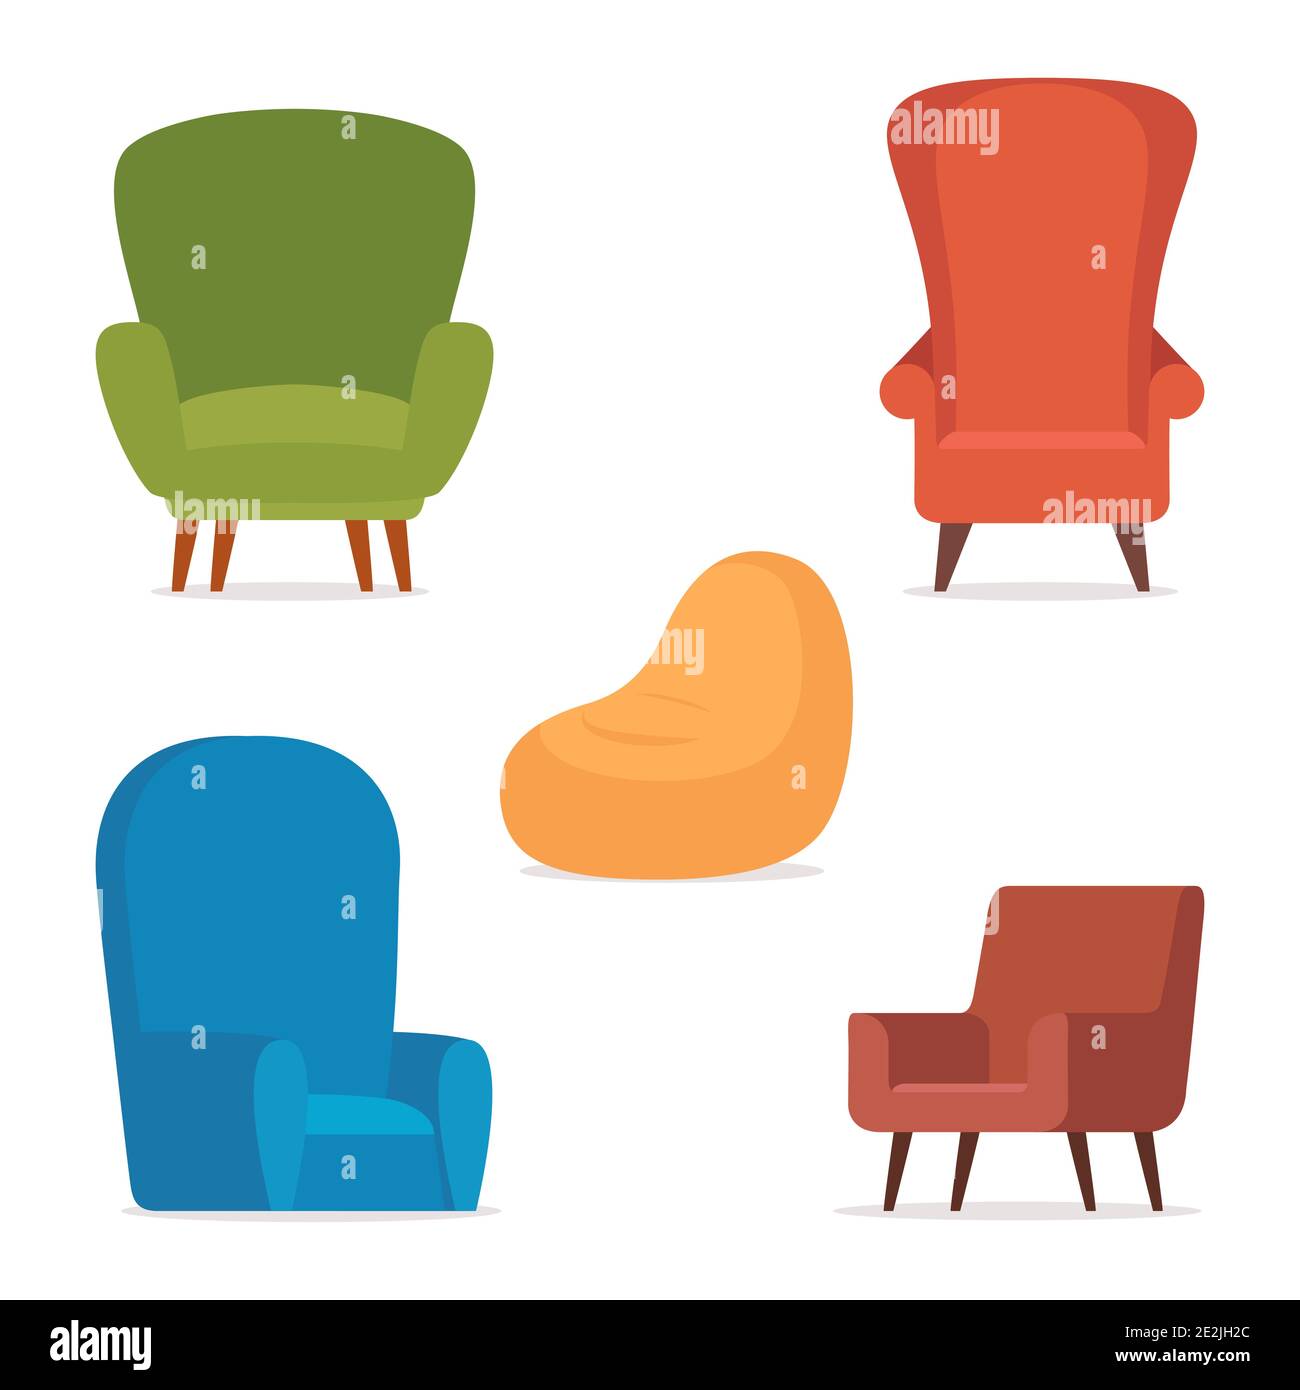 Komfortable Retro-Sessel und moderne Sessel. Sammlung von stilvollen gemütlichen Möbeln. Set von trendigen Stühlen, einfache modische Möbel Elemente. Vektorgrafik Stock Vektor